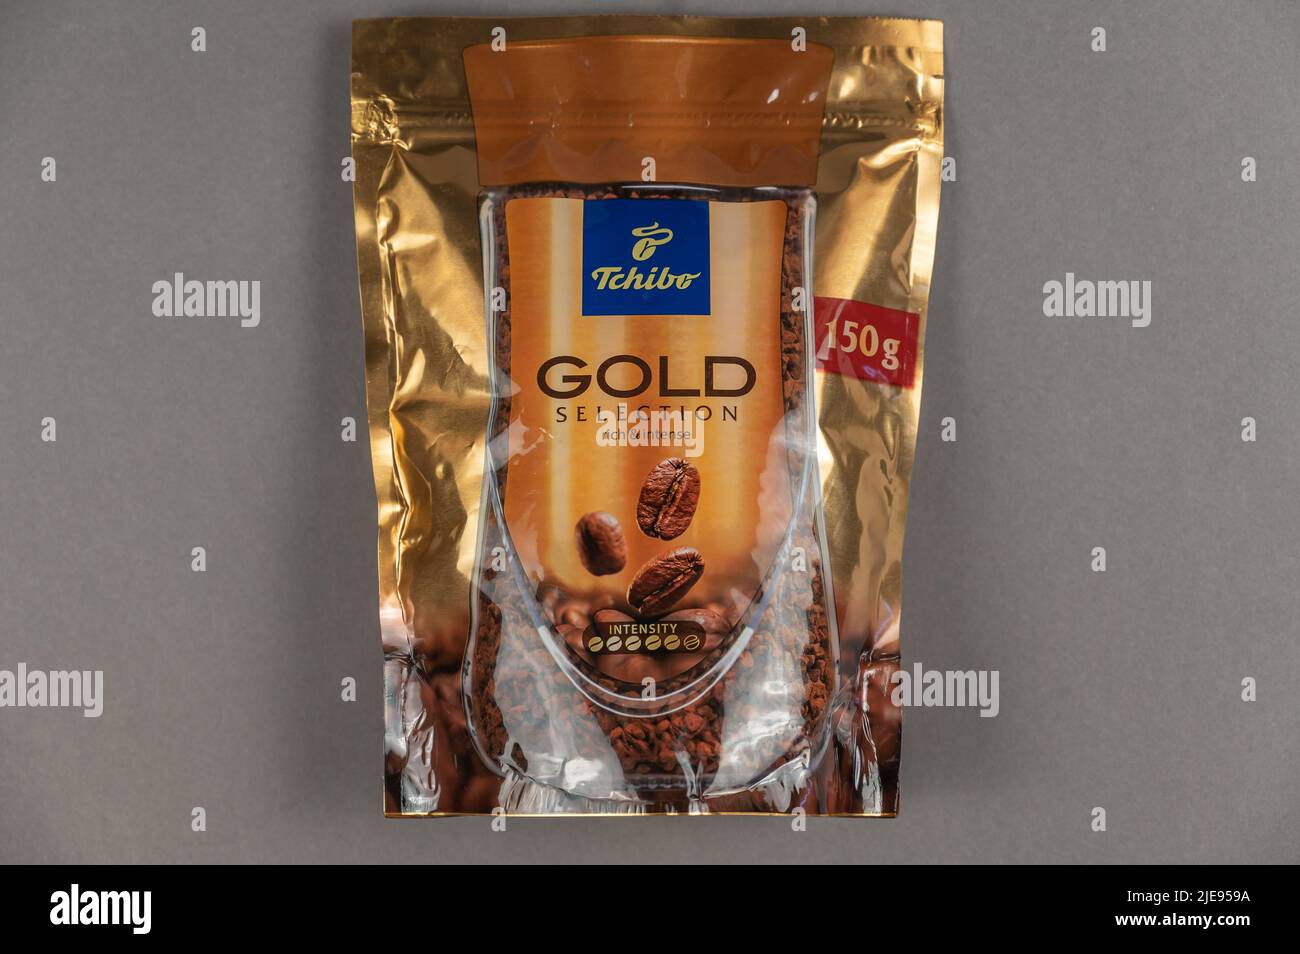 Tchibo Gold Selection Kaffee gegen Grau. Tchibo deutsches Unternehmen in der Produktion von Kaffee, sowie Markenbekleidung, Haushaltsgeräte, Hausgerätes beschäftigt Stockfoto